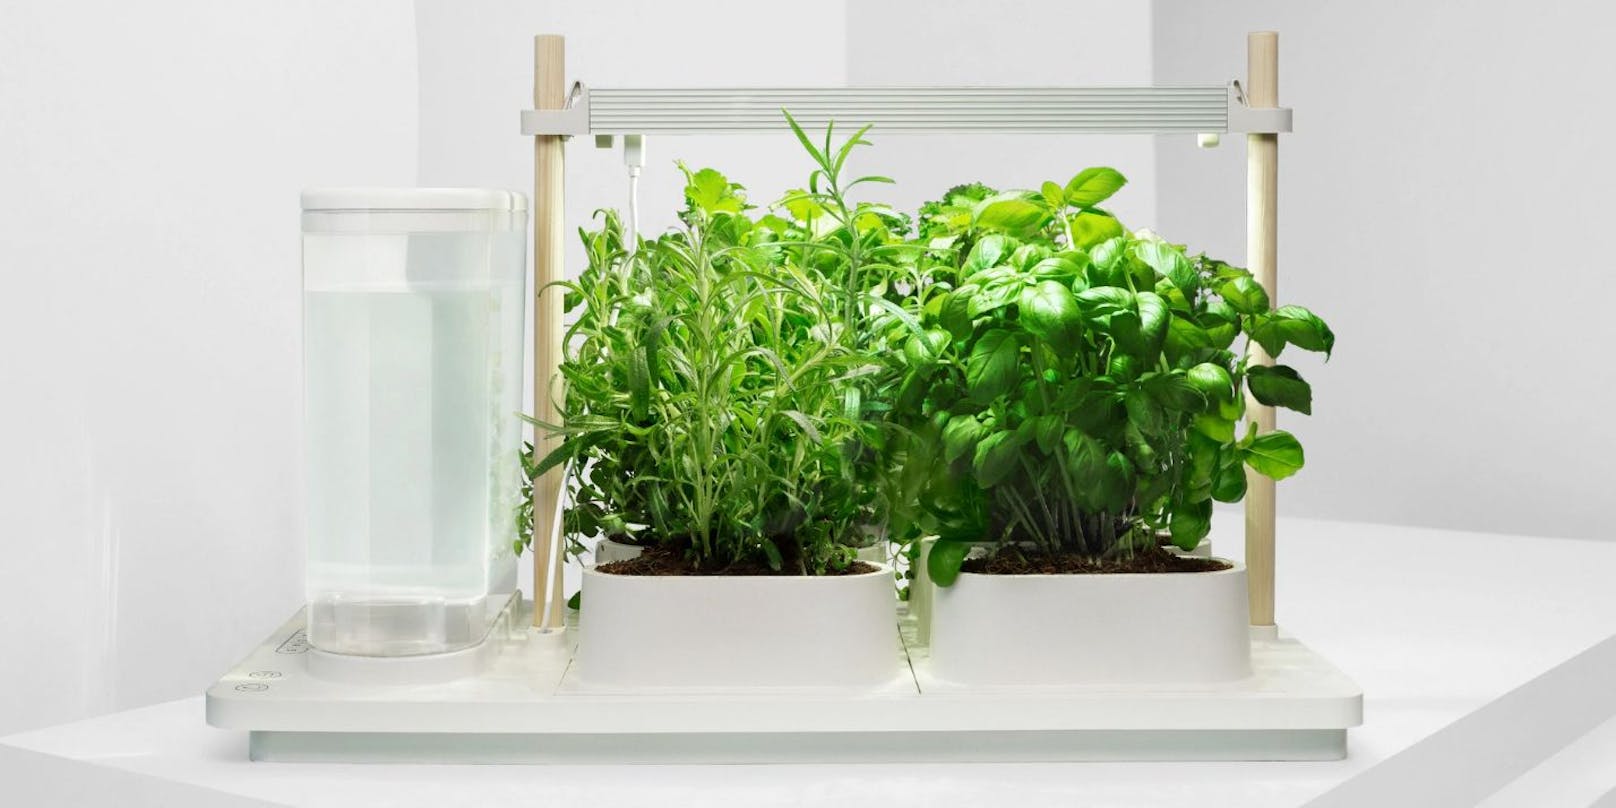 "Auk Eco möchte smartes Indoor Gardening revolutionieren – jetzt auch europaweit", heißt es vom Unternehmen.